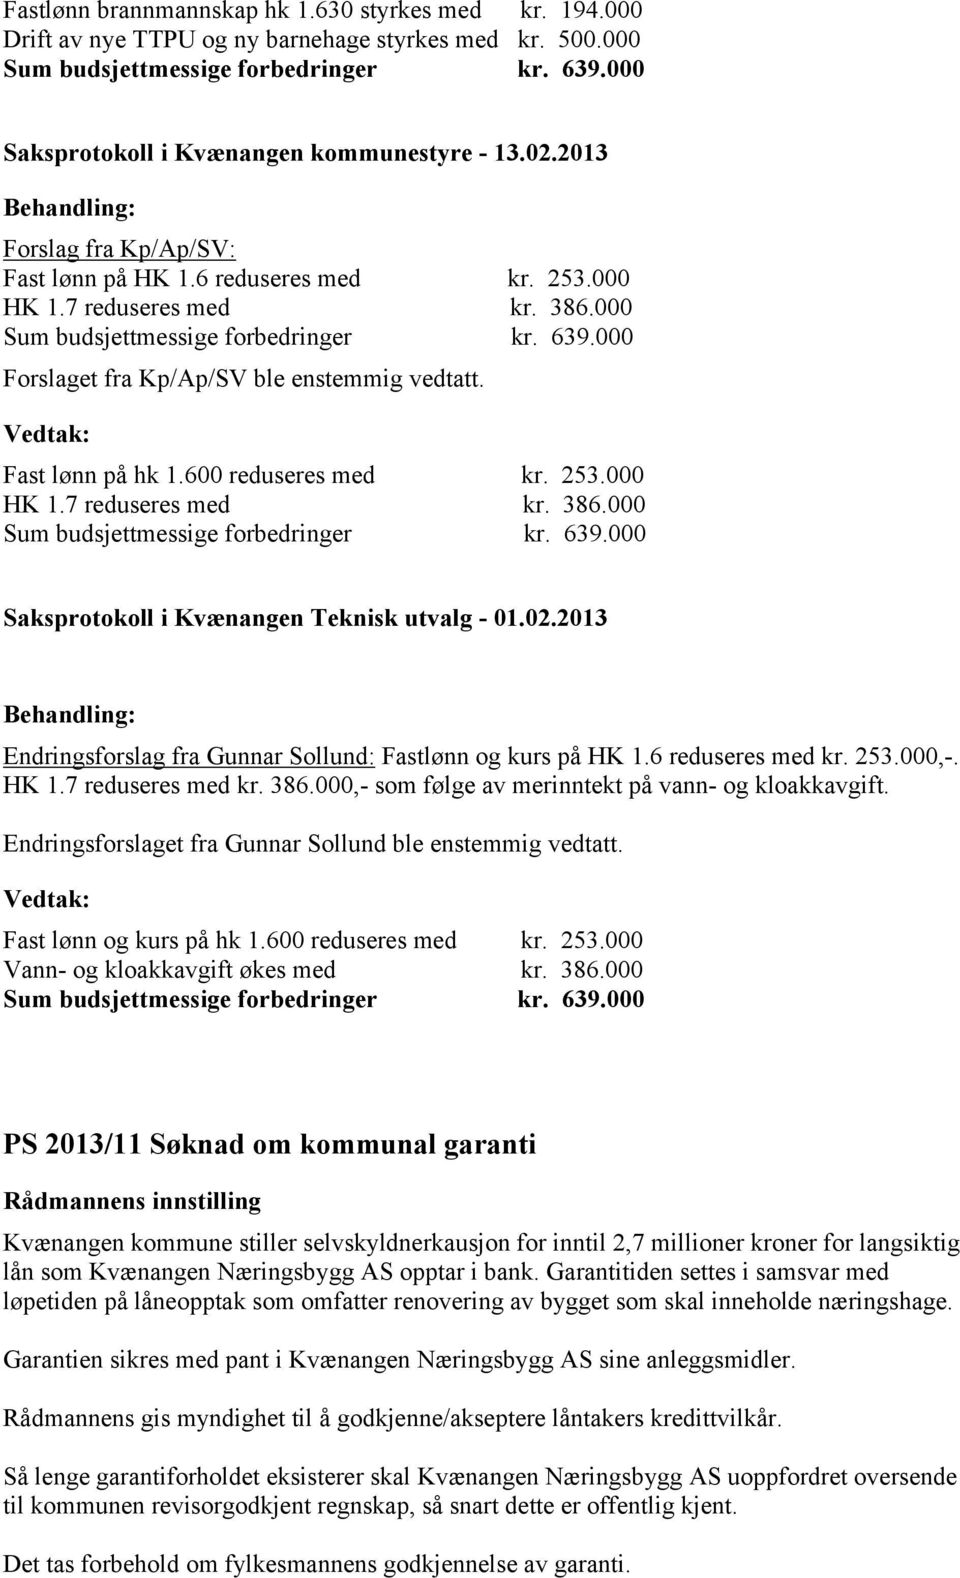 02.2013 Endringsforslag fra Gunnar Sollund: Fastlønn og kurs på HK 1.6 reduseres med kr. 253.000,-. HK 1.7 reduseres med kr. 386.000,- som følge av merinntekt på vann- og kloakkavgift.